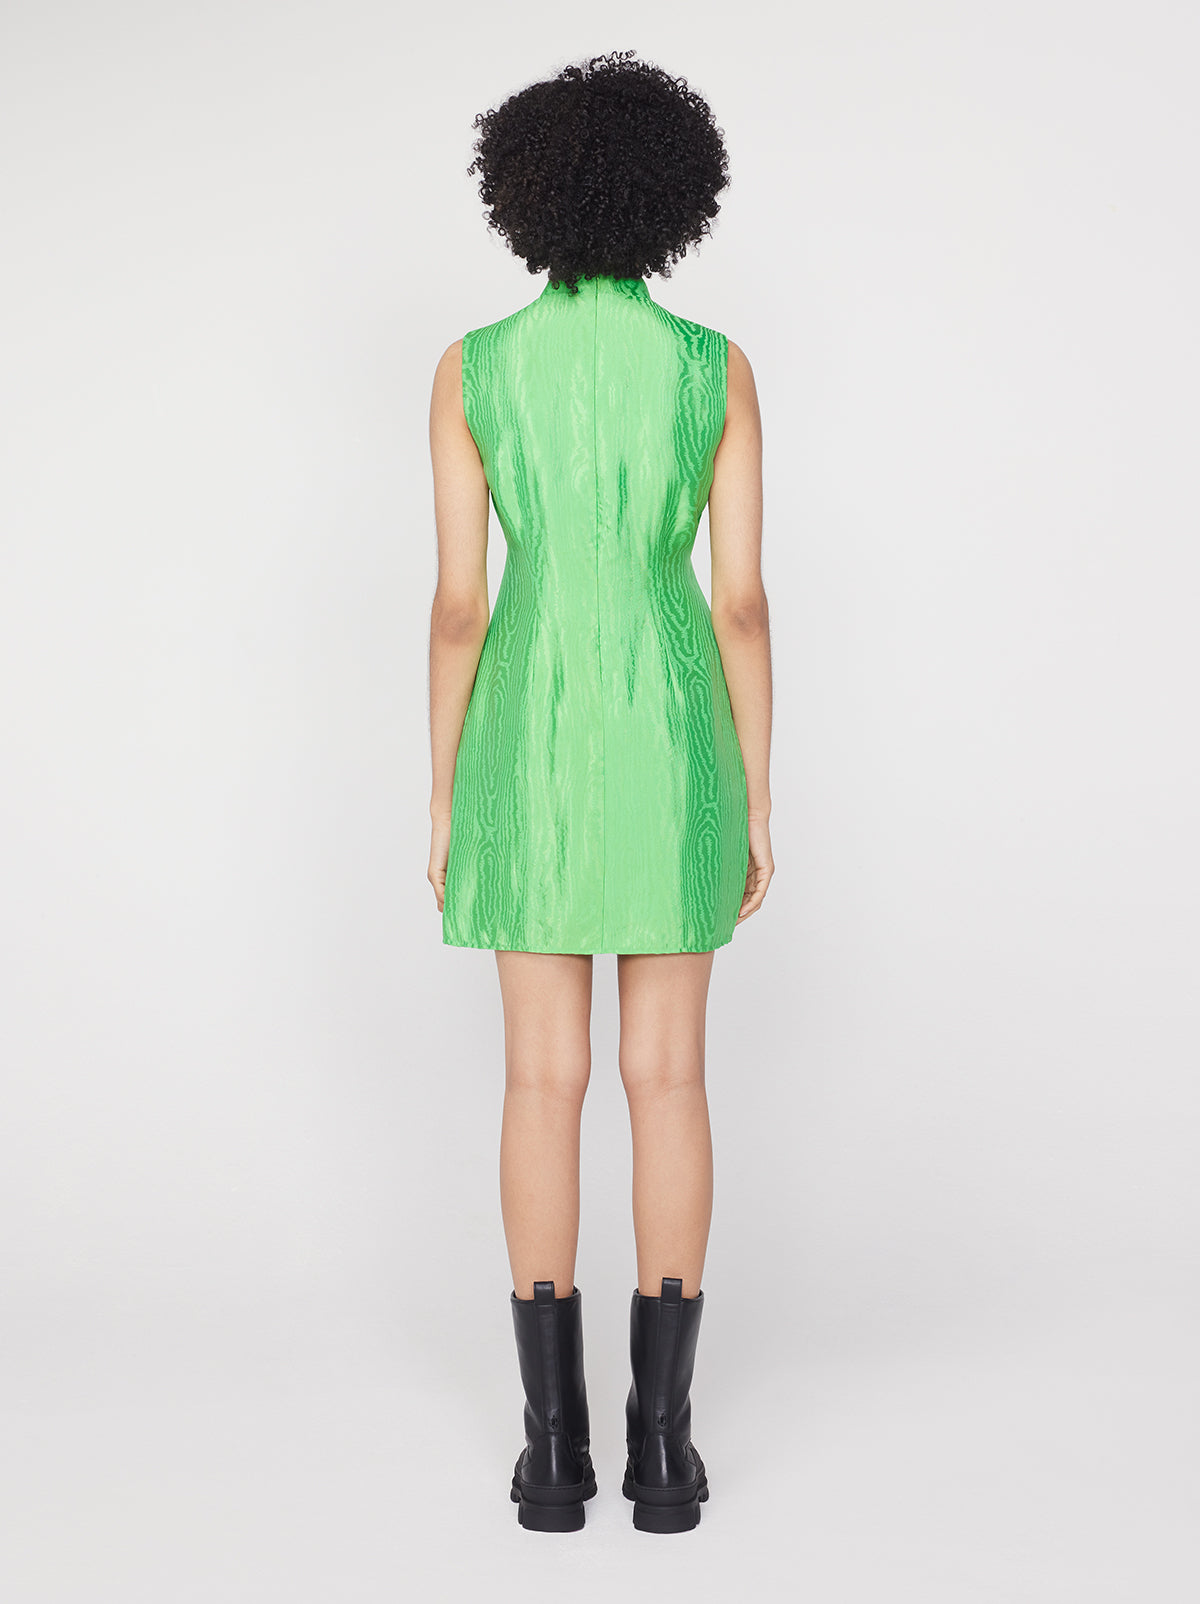 Aubrey Lime Green Mini Dress